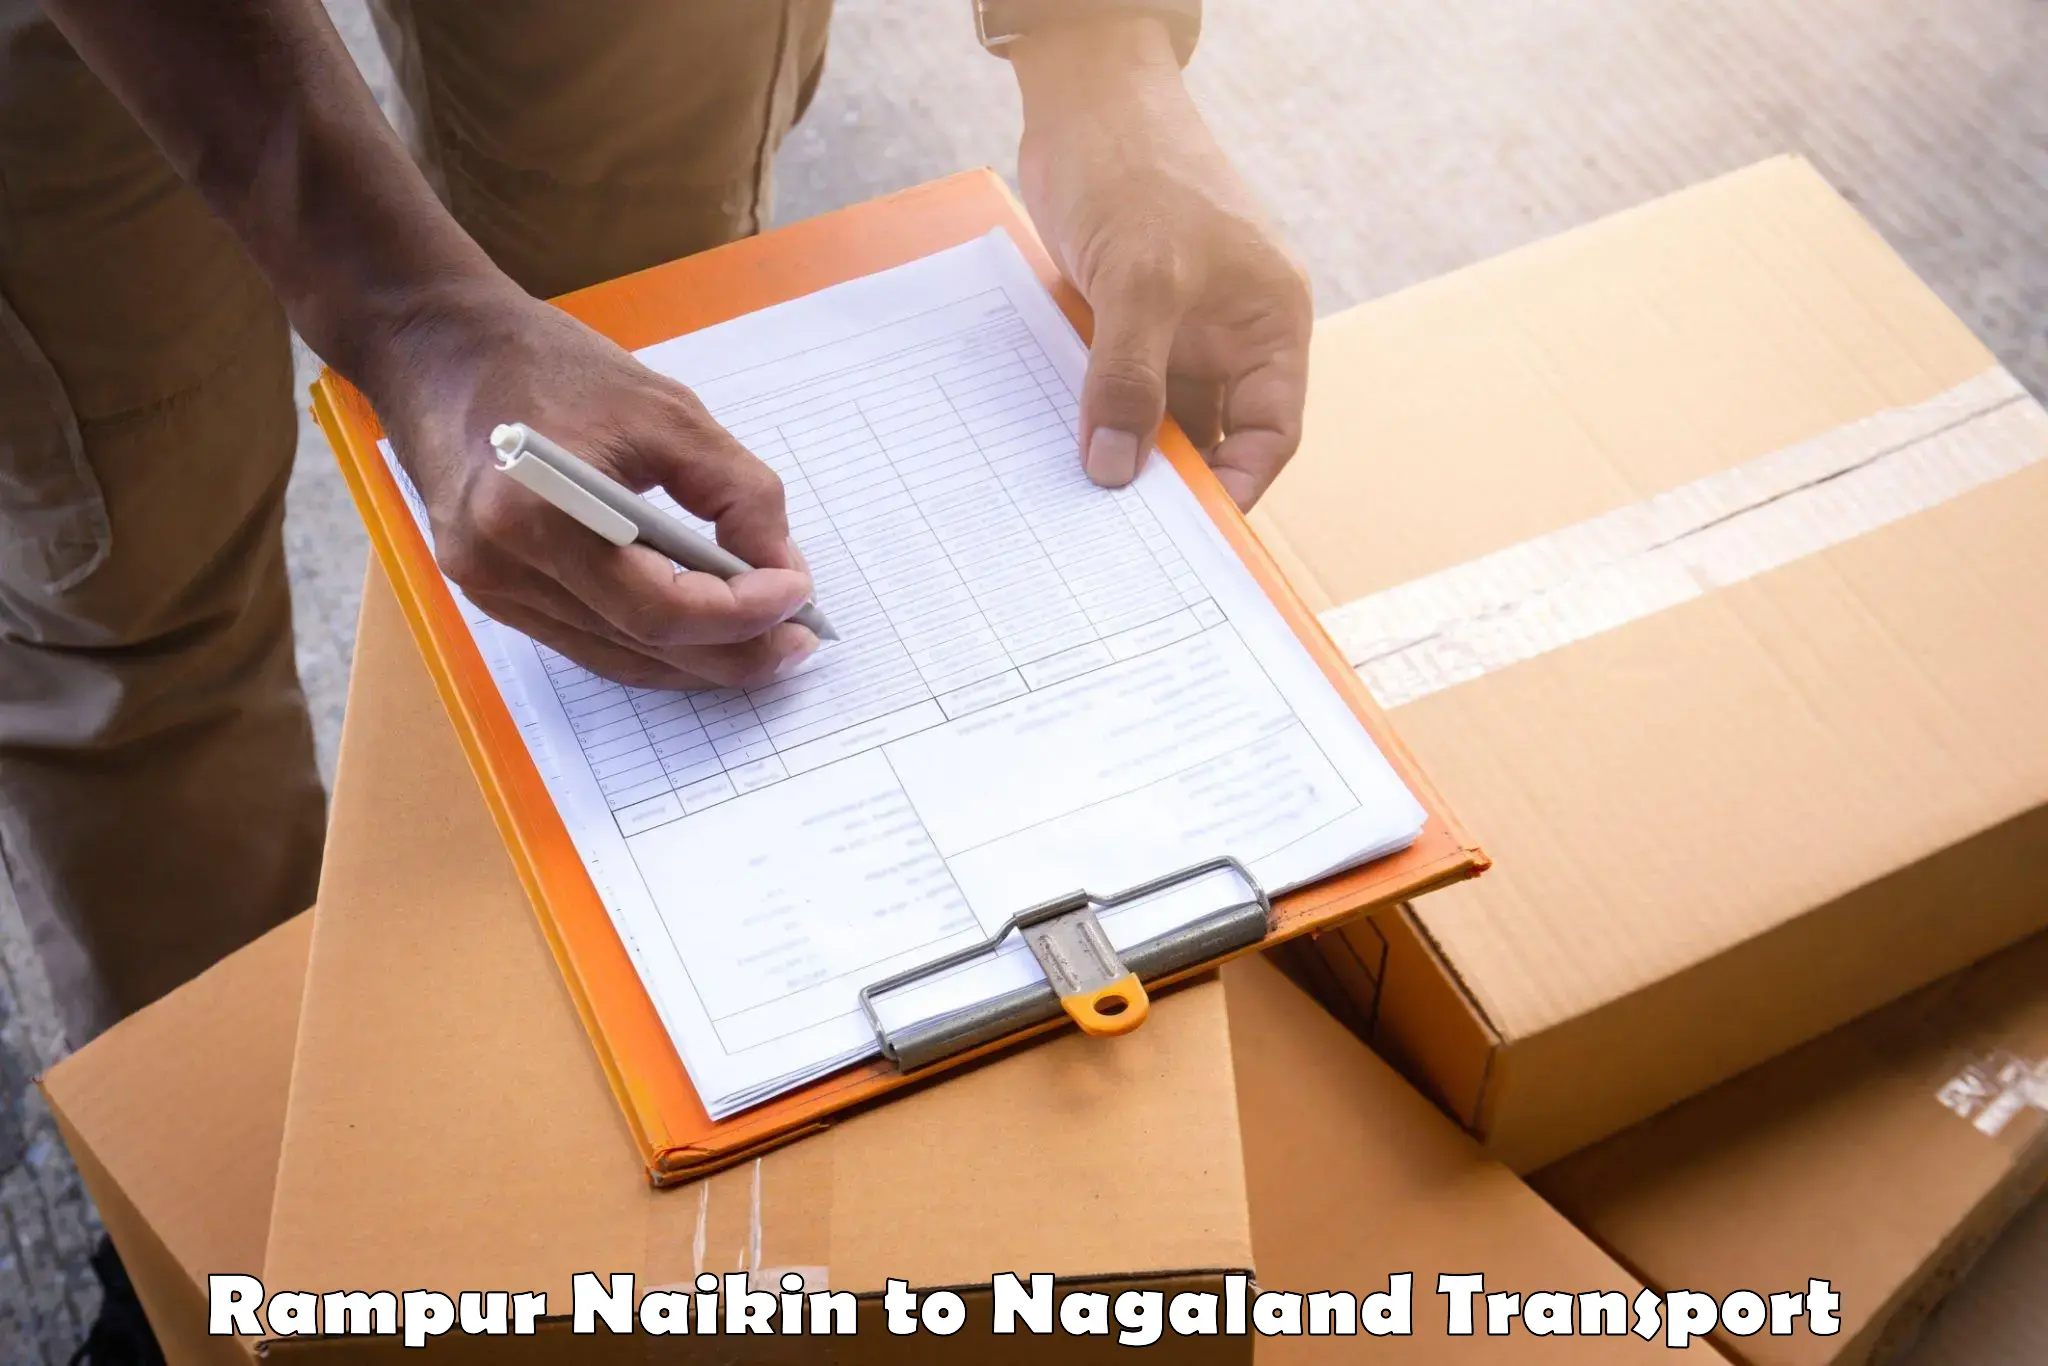 International cargo transportation services Rampur Naikin to Longleng